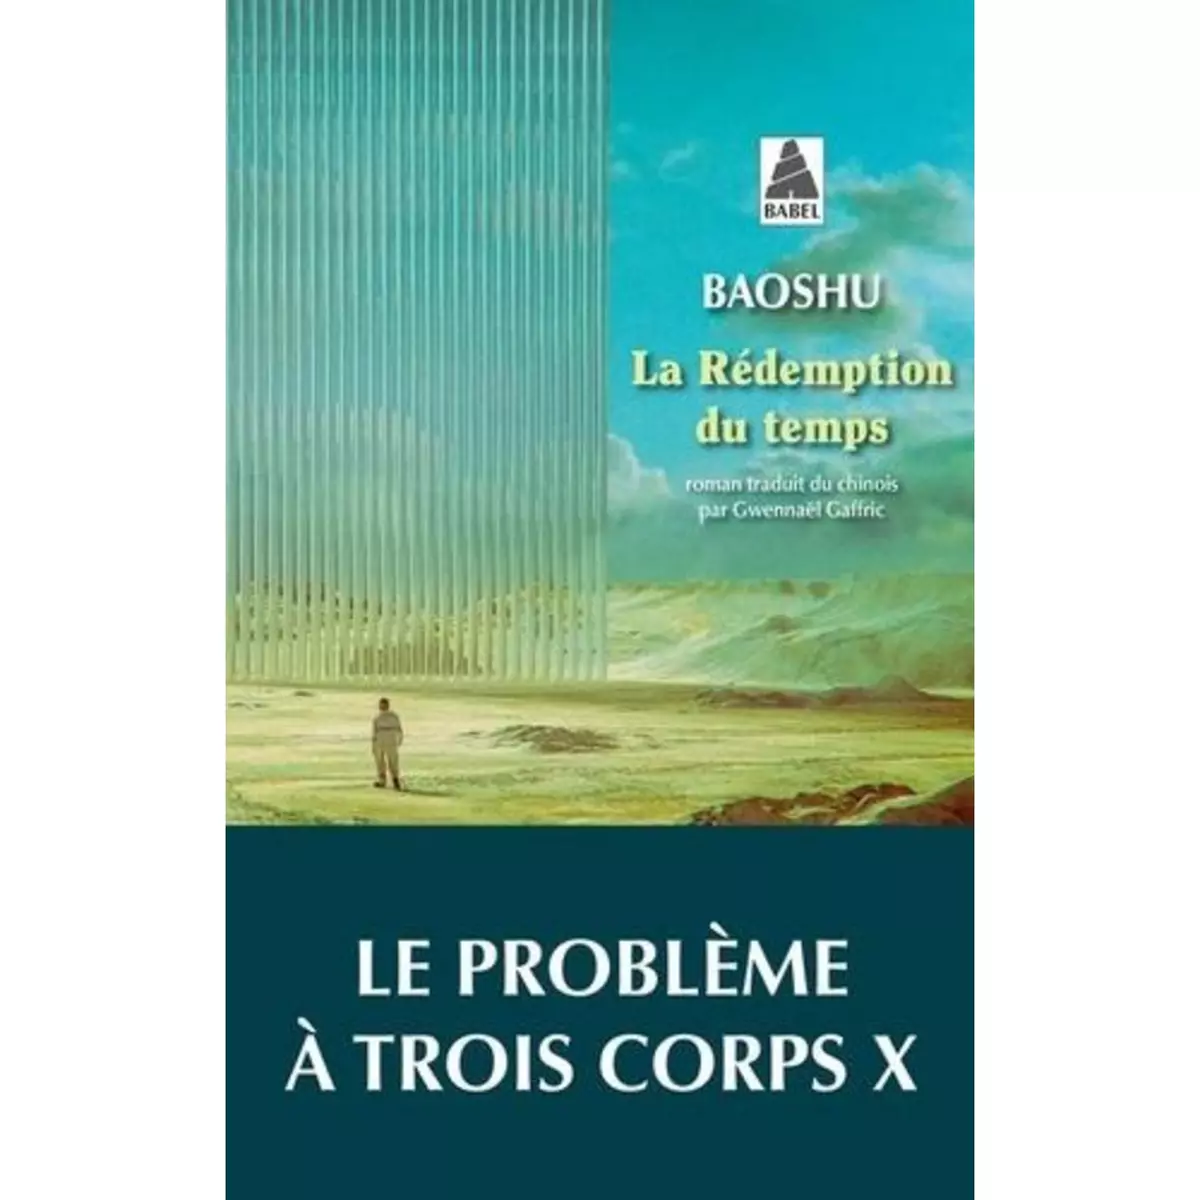  LA REDEMPTION DU TEMPS. LE PROBLEME A TROIS CORPS X, Baoshu